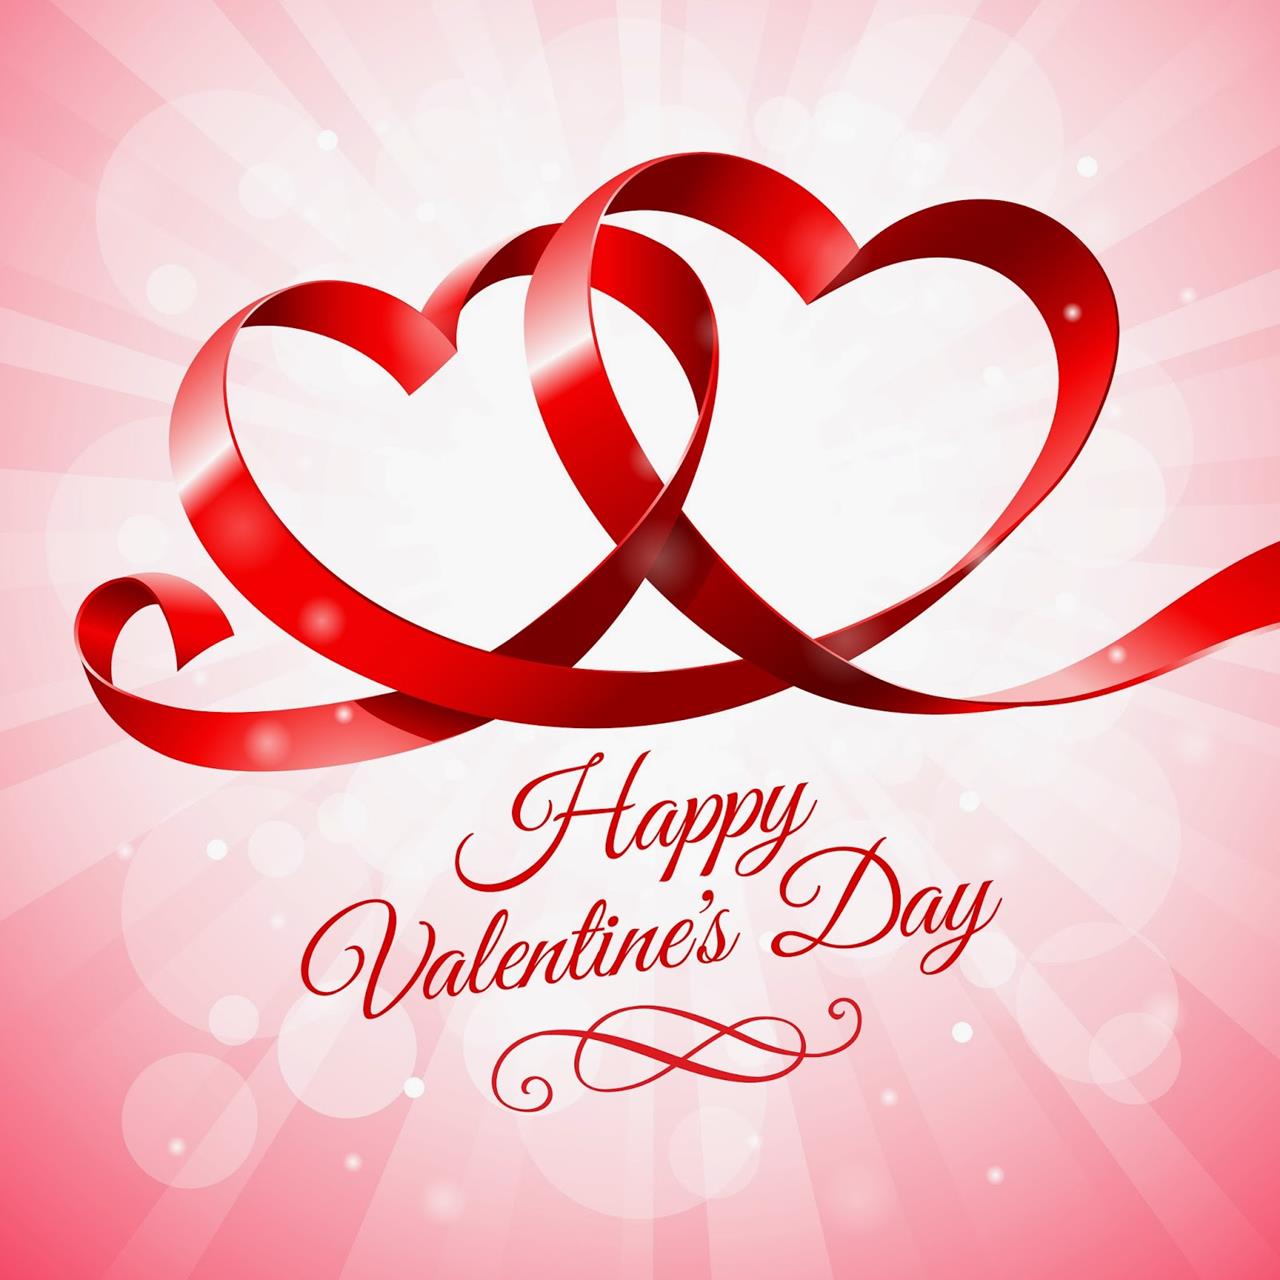 14 febbraio carta da parati di san valentino,cuore,testo,amore,rosso,san valentino